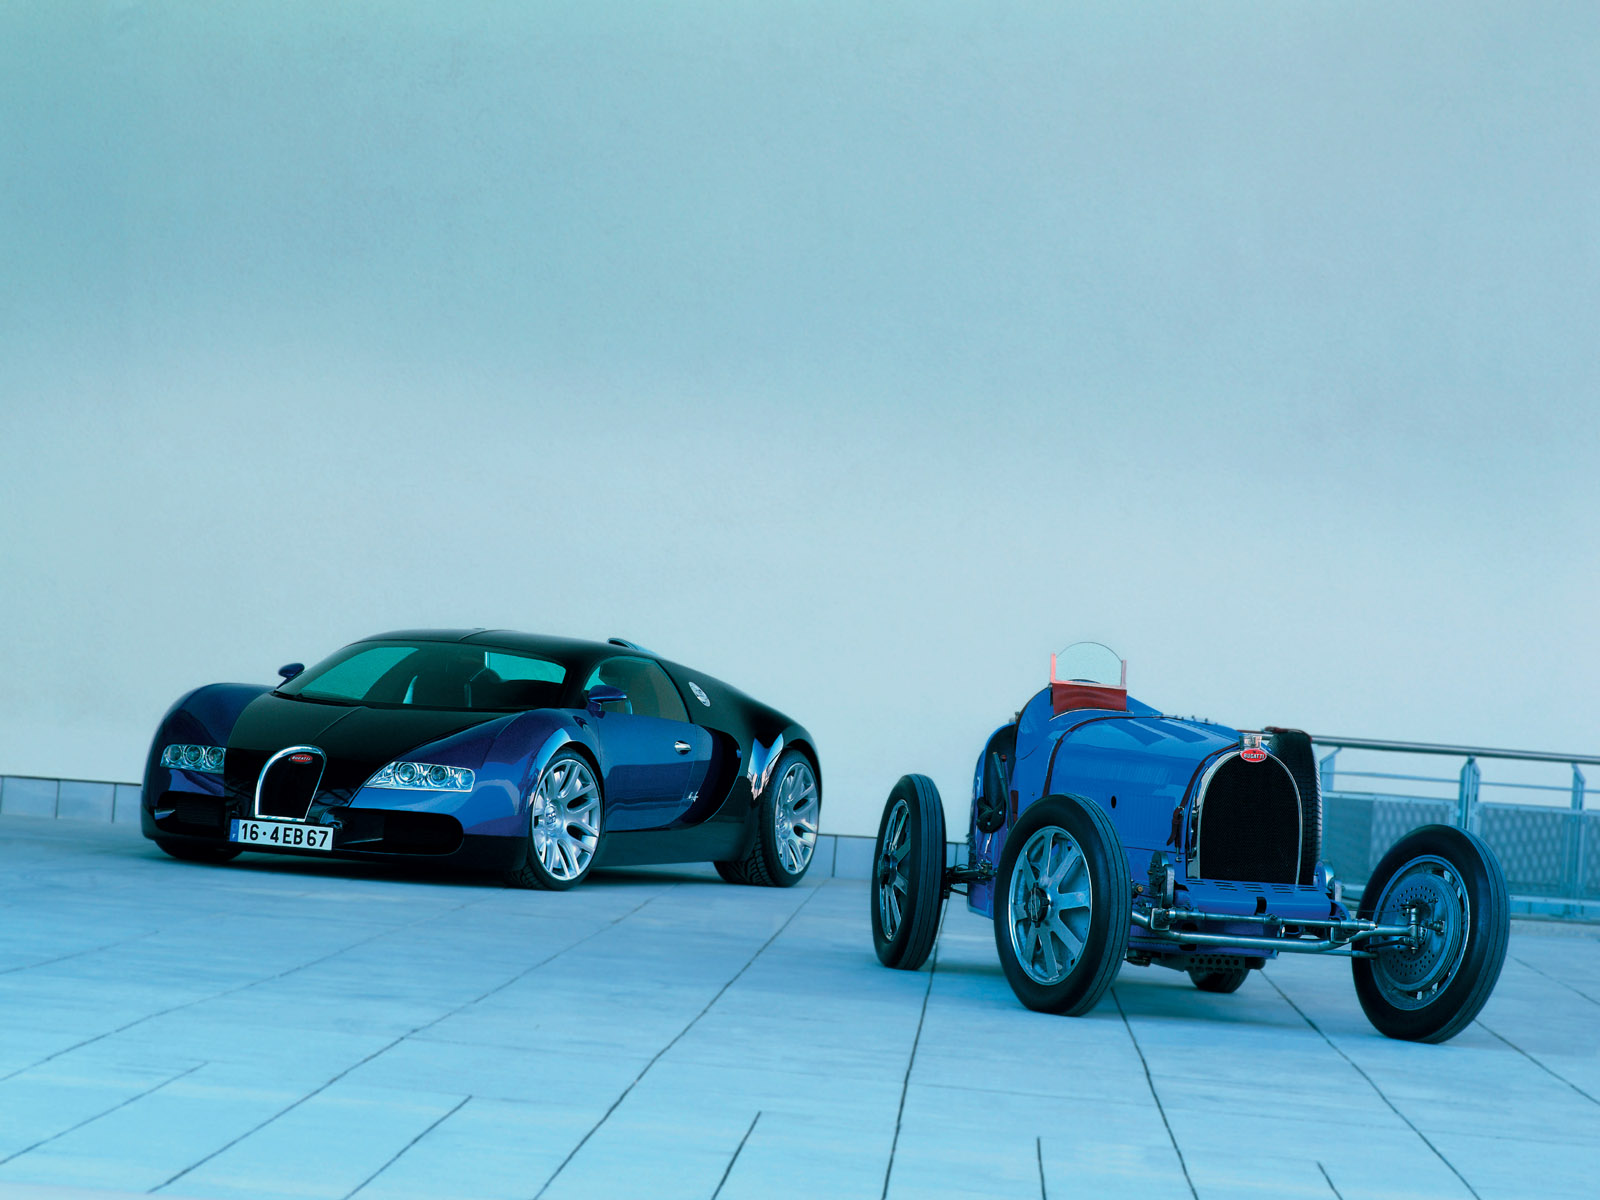 Classic Bugatti Vs New Photo And Wallpaper